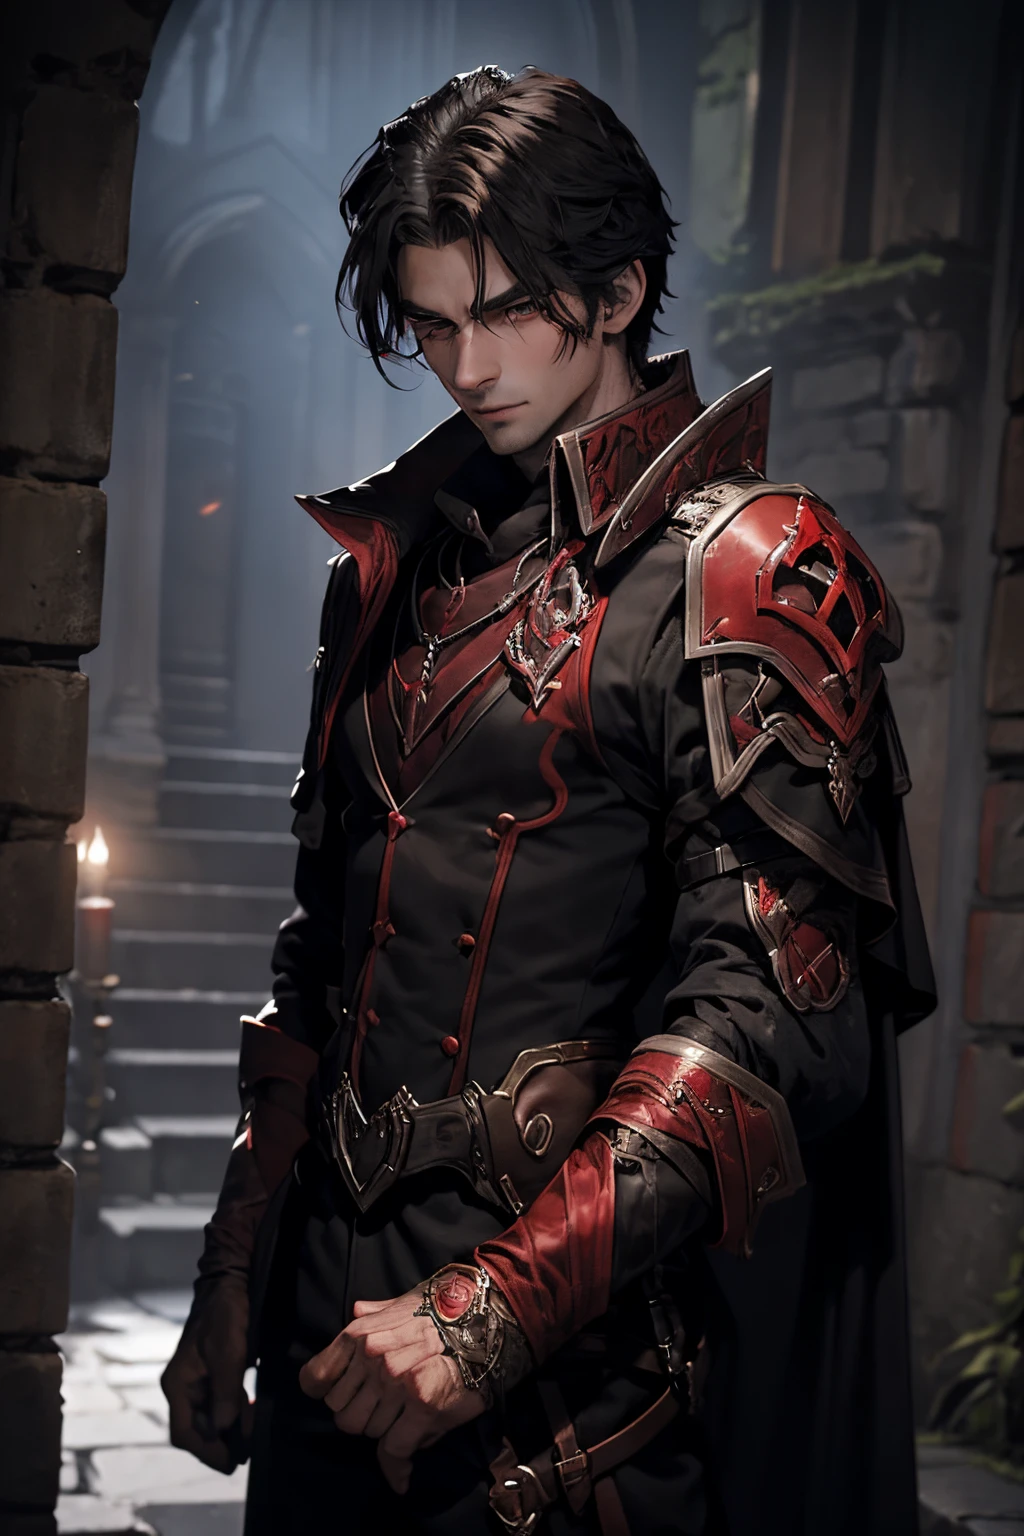 Un dhampir blood hunter homme solennel se tient prêt pour la chasse nocturne. Imaginez un personnage avec des traits vampiriques distincts, vêtu d'une armure sombre noir et rouge tenant deux épées rouges sang